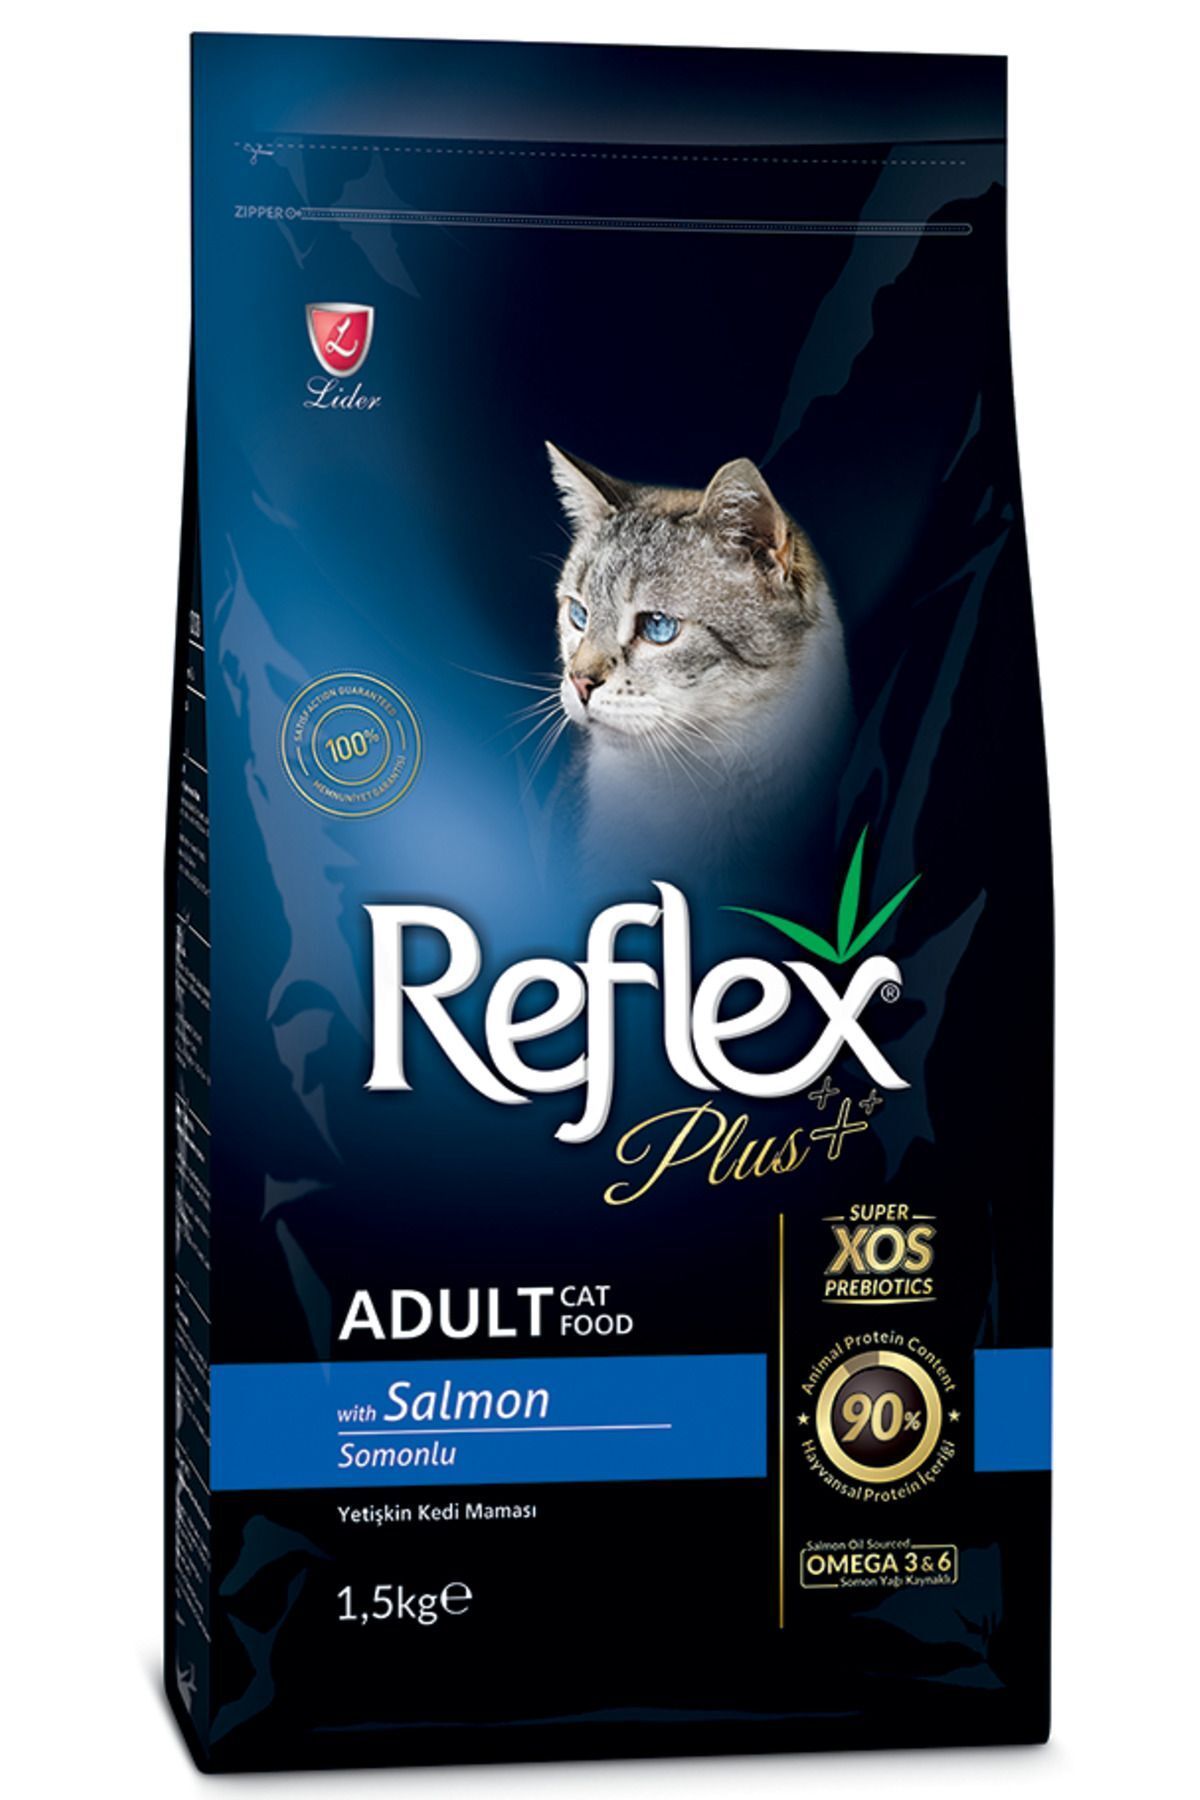 Reflex Plus Somonlu 1,5 Kg Yetişkin Kedi Maması